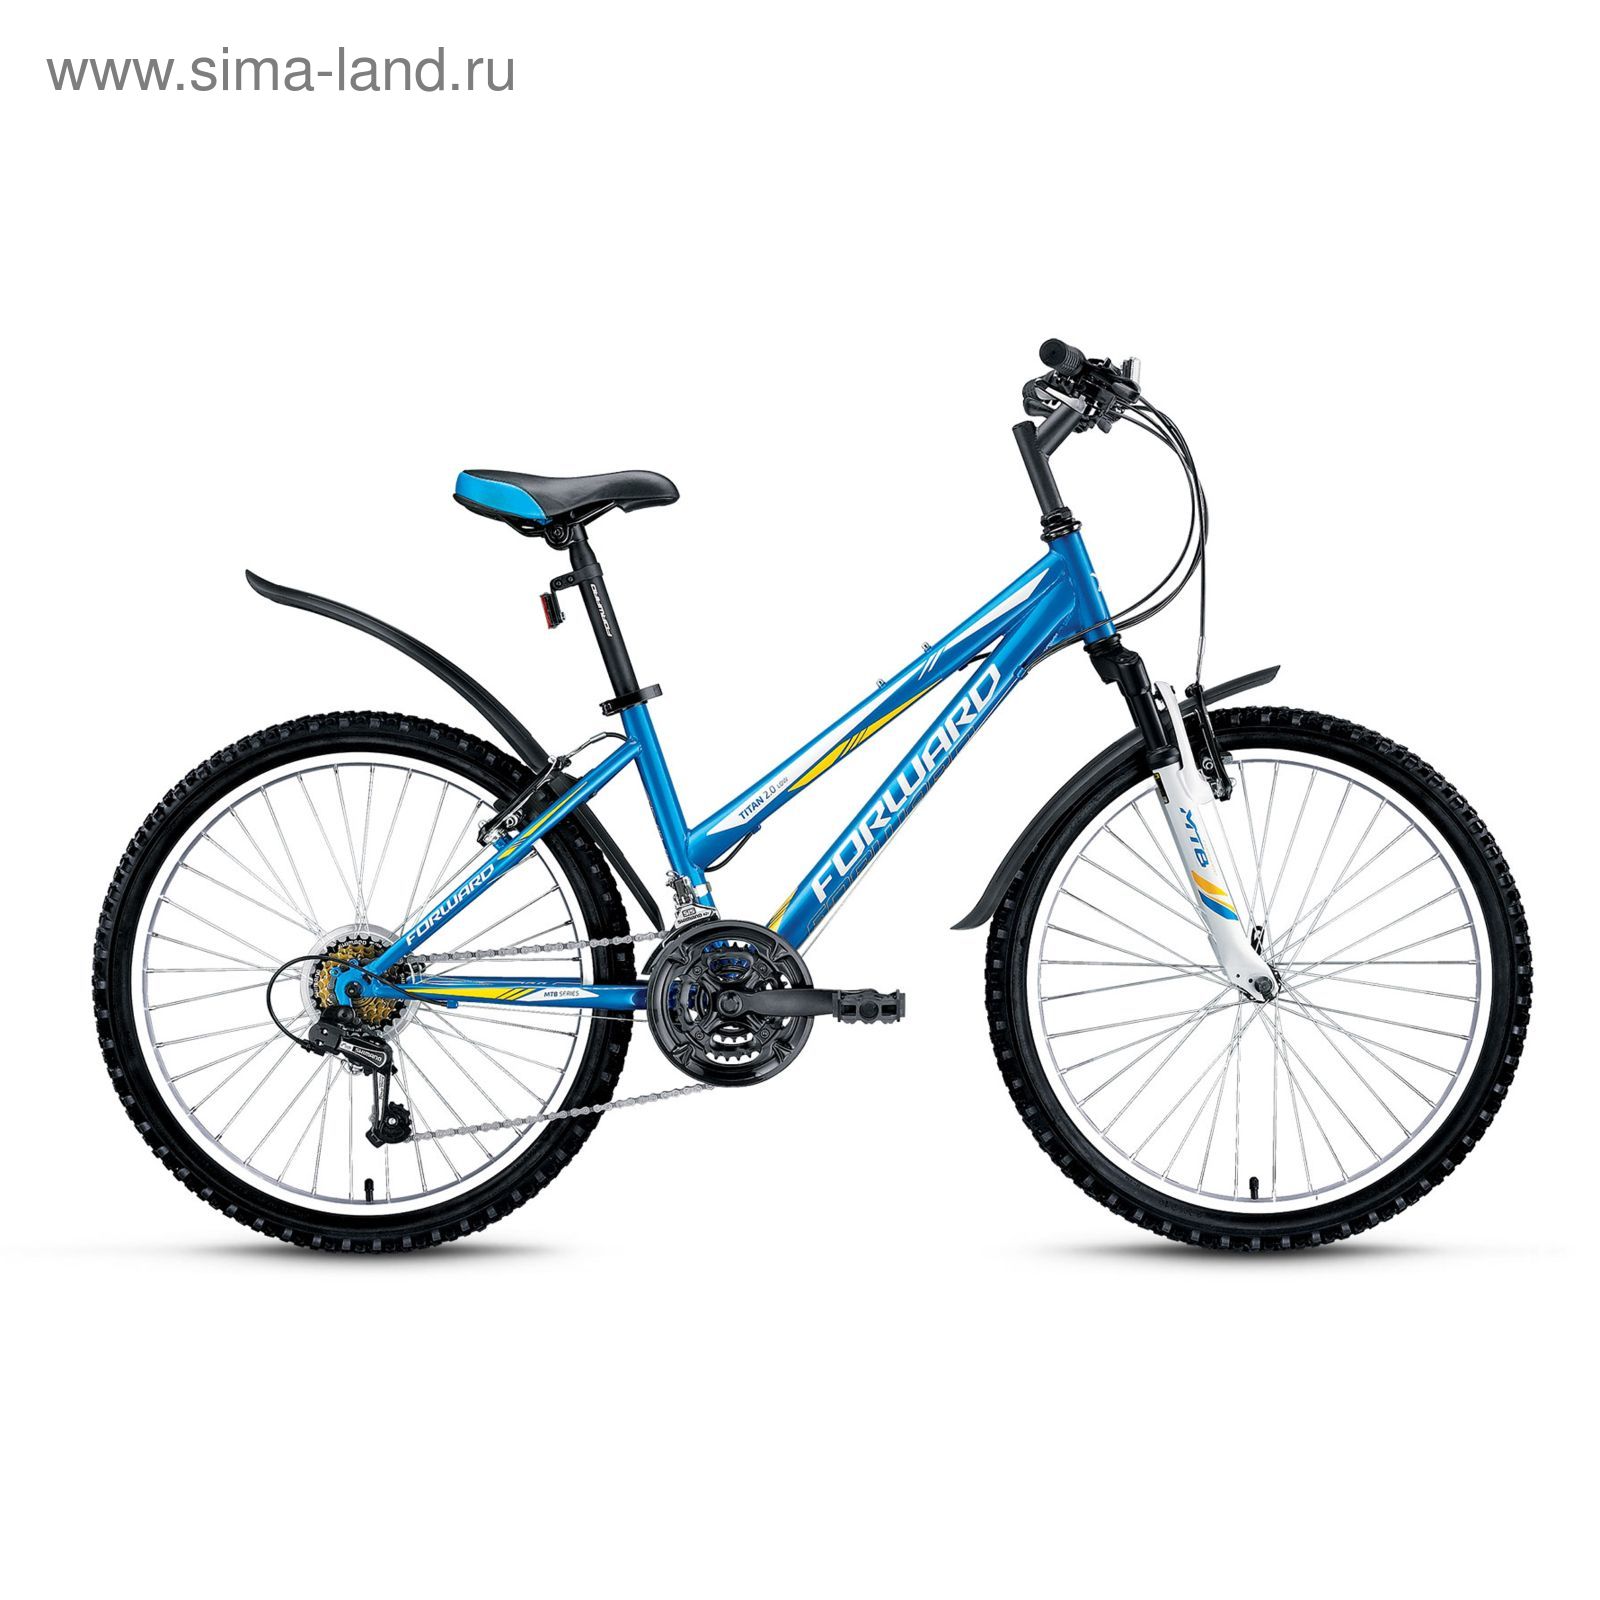 Велосипед 24" Forward Titan 2.0 low, 2016, цвет синий, размер 14"